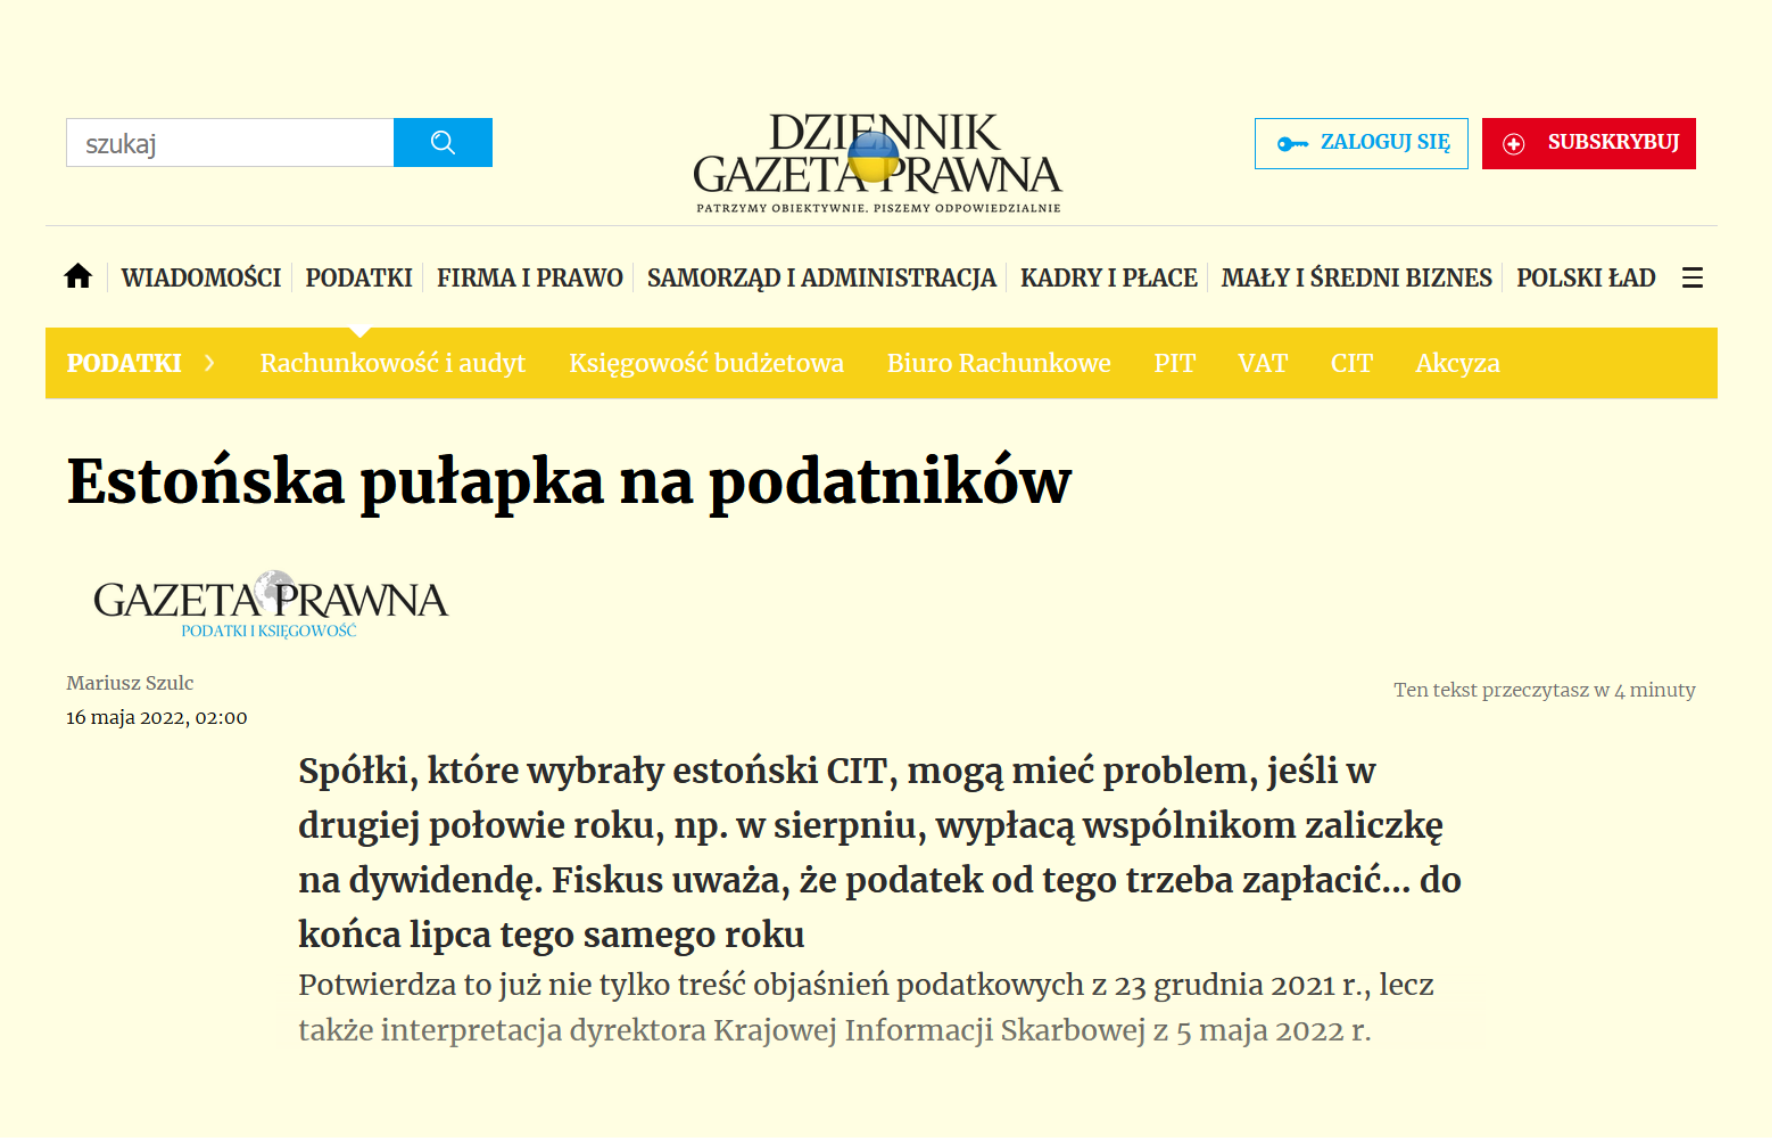 kancelaria-ostrowski-i-wsp-lnicy-adrian-k-mpi-ski-dla-dziennik-gazeta